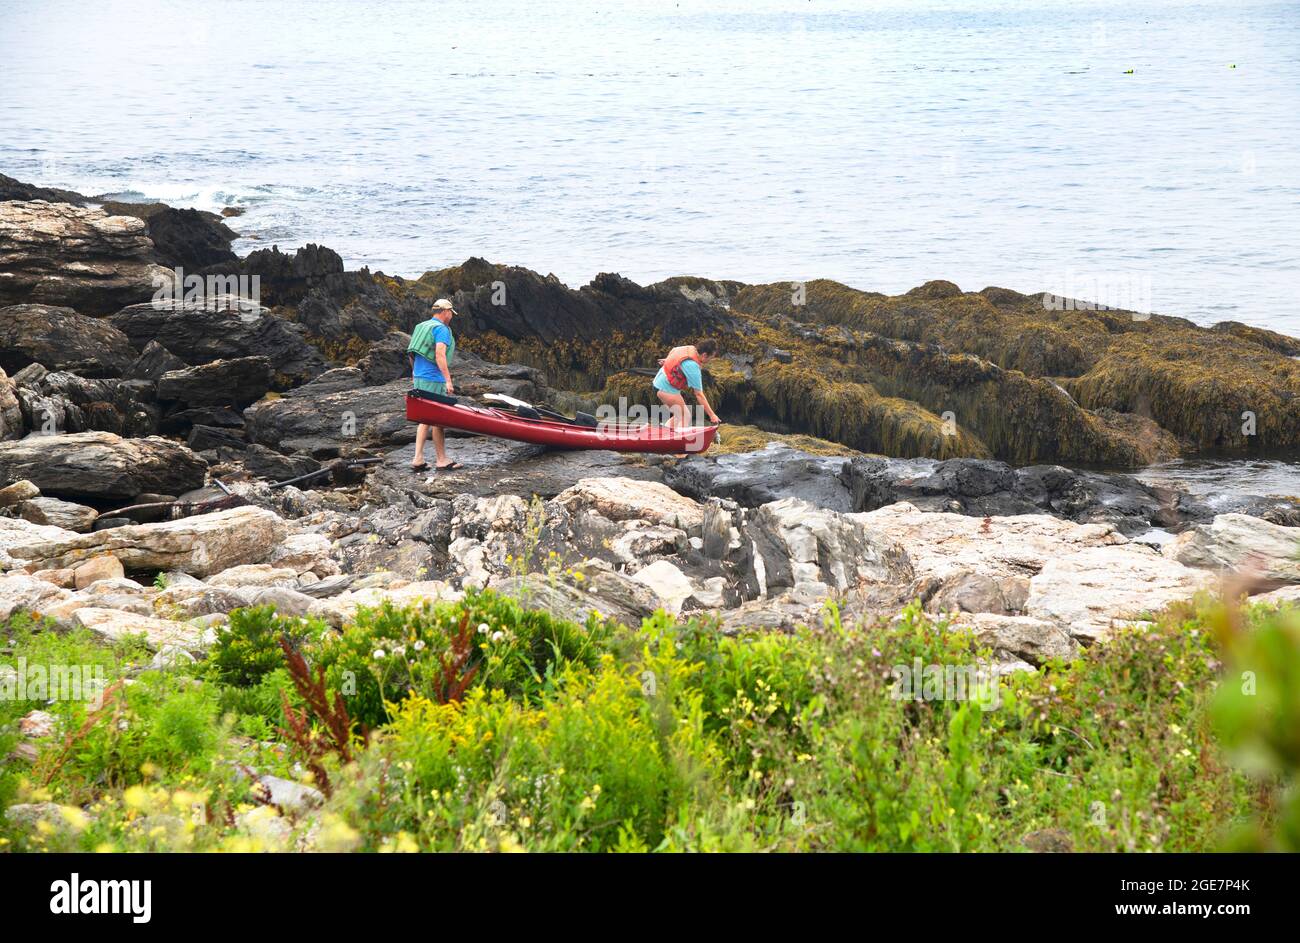 Un couple se prépare à lancer un kayak au large de la côte rocheuse d'East Boothbay, (Ocean point), Maine, États-Unis Banque D'Images